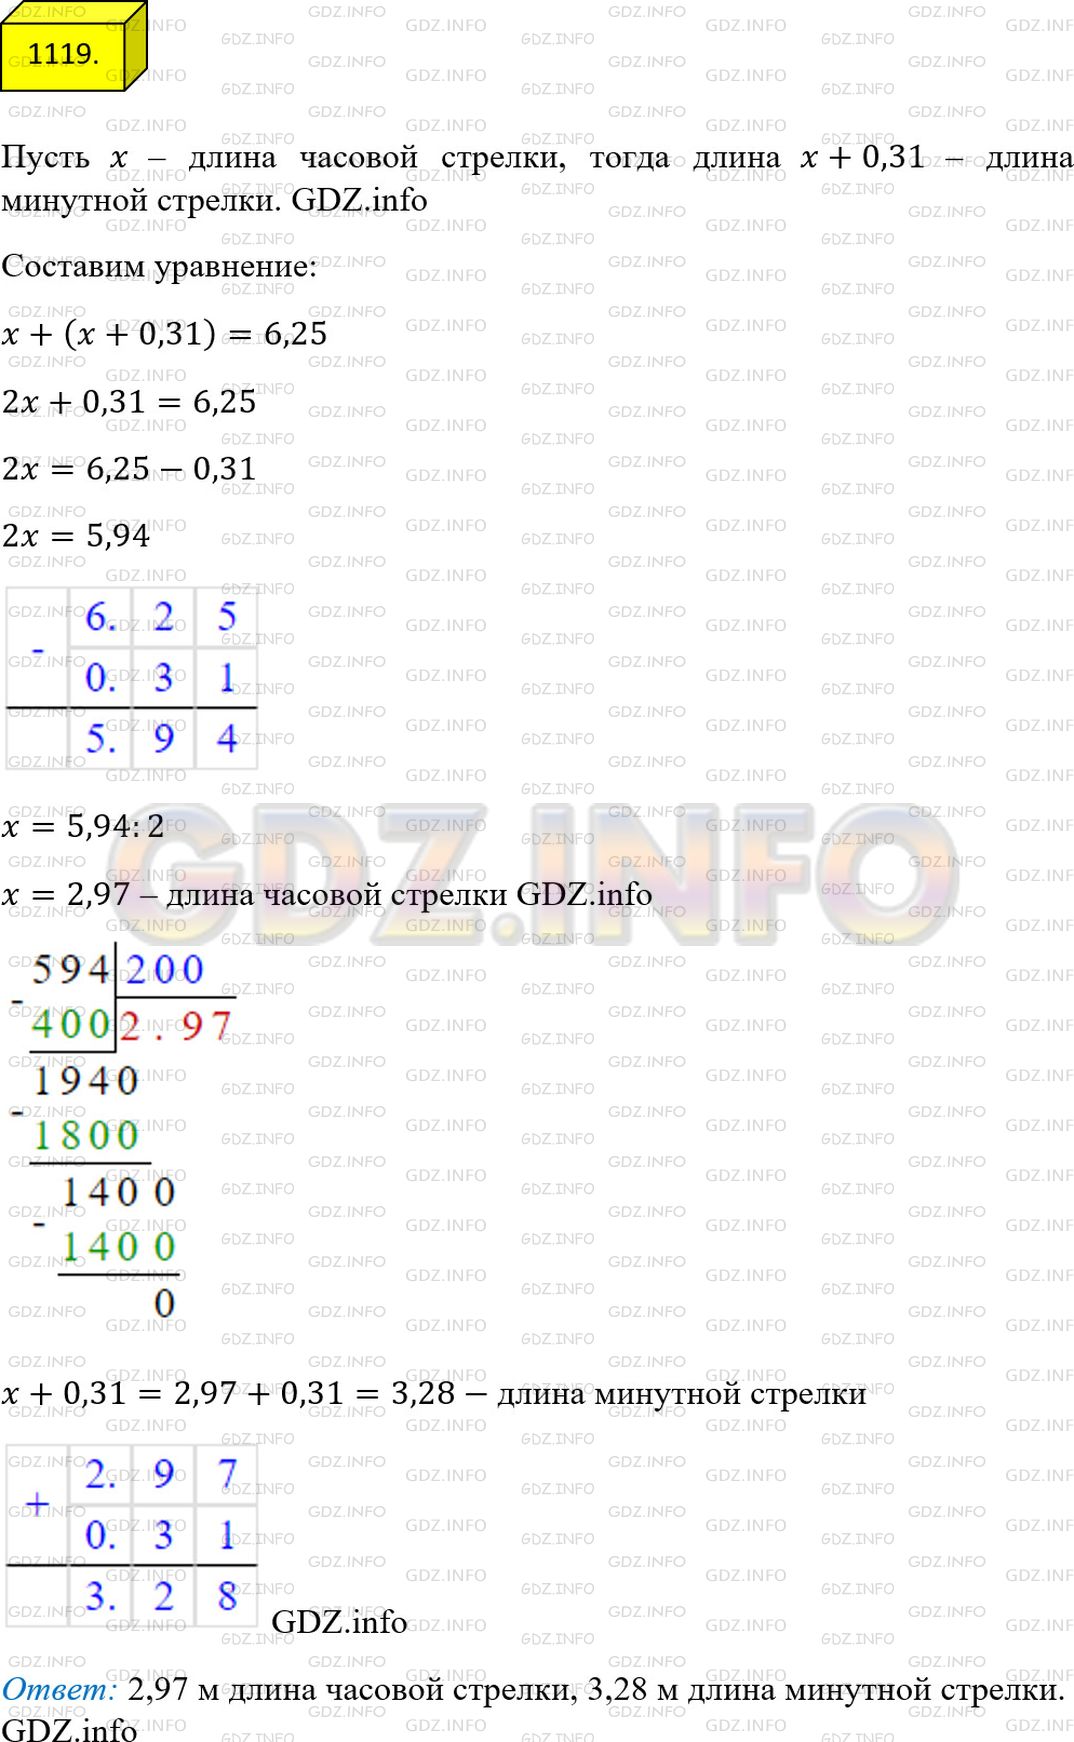 Фото ответа 4 на Задание 1119 из ГДЗ по Математике за 5 класс: А.Г. Мерзляк, В.Б. Полонский, М.С. Якир. 2014г.